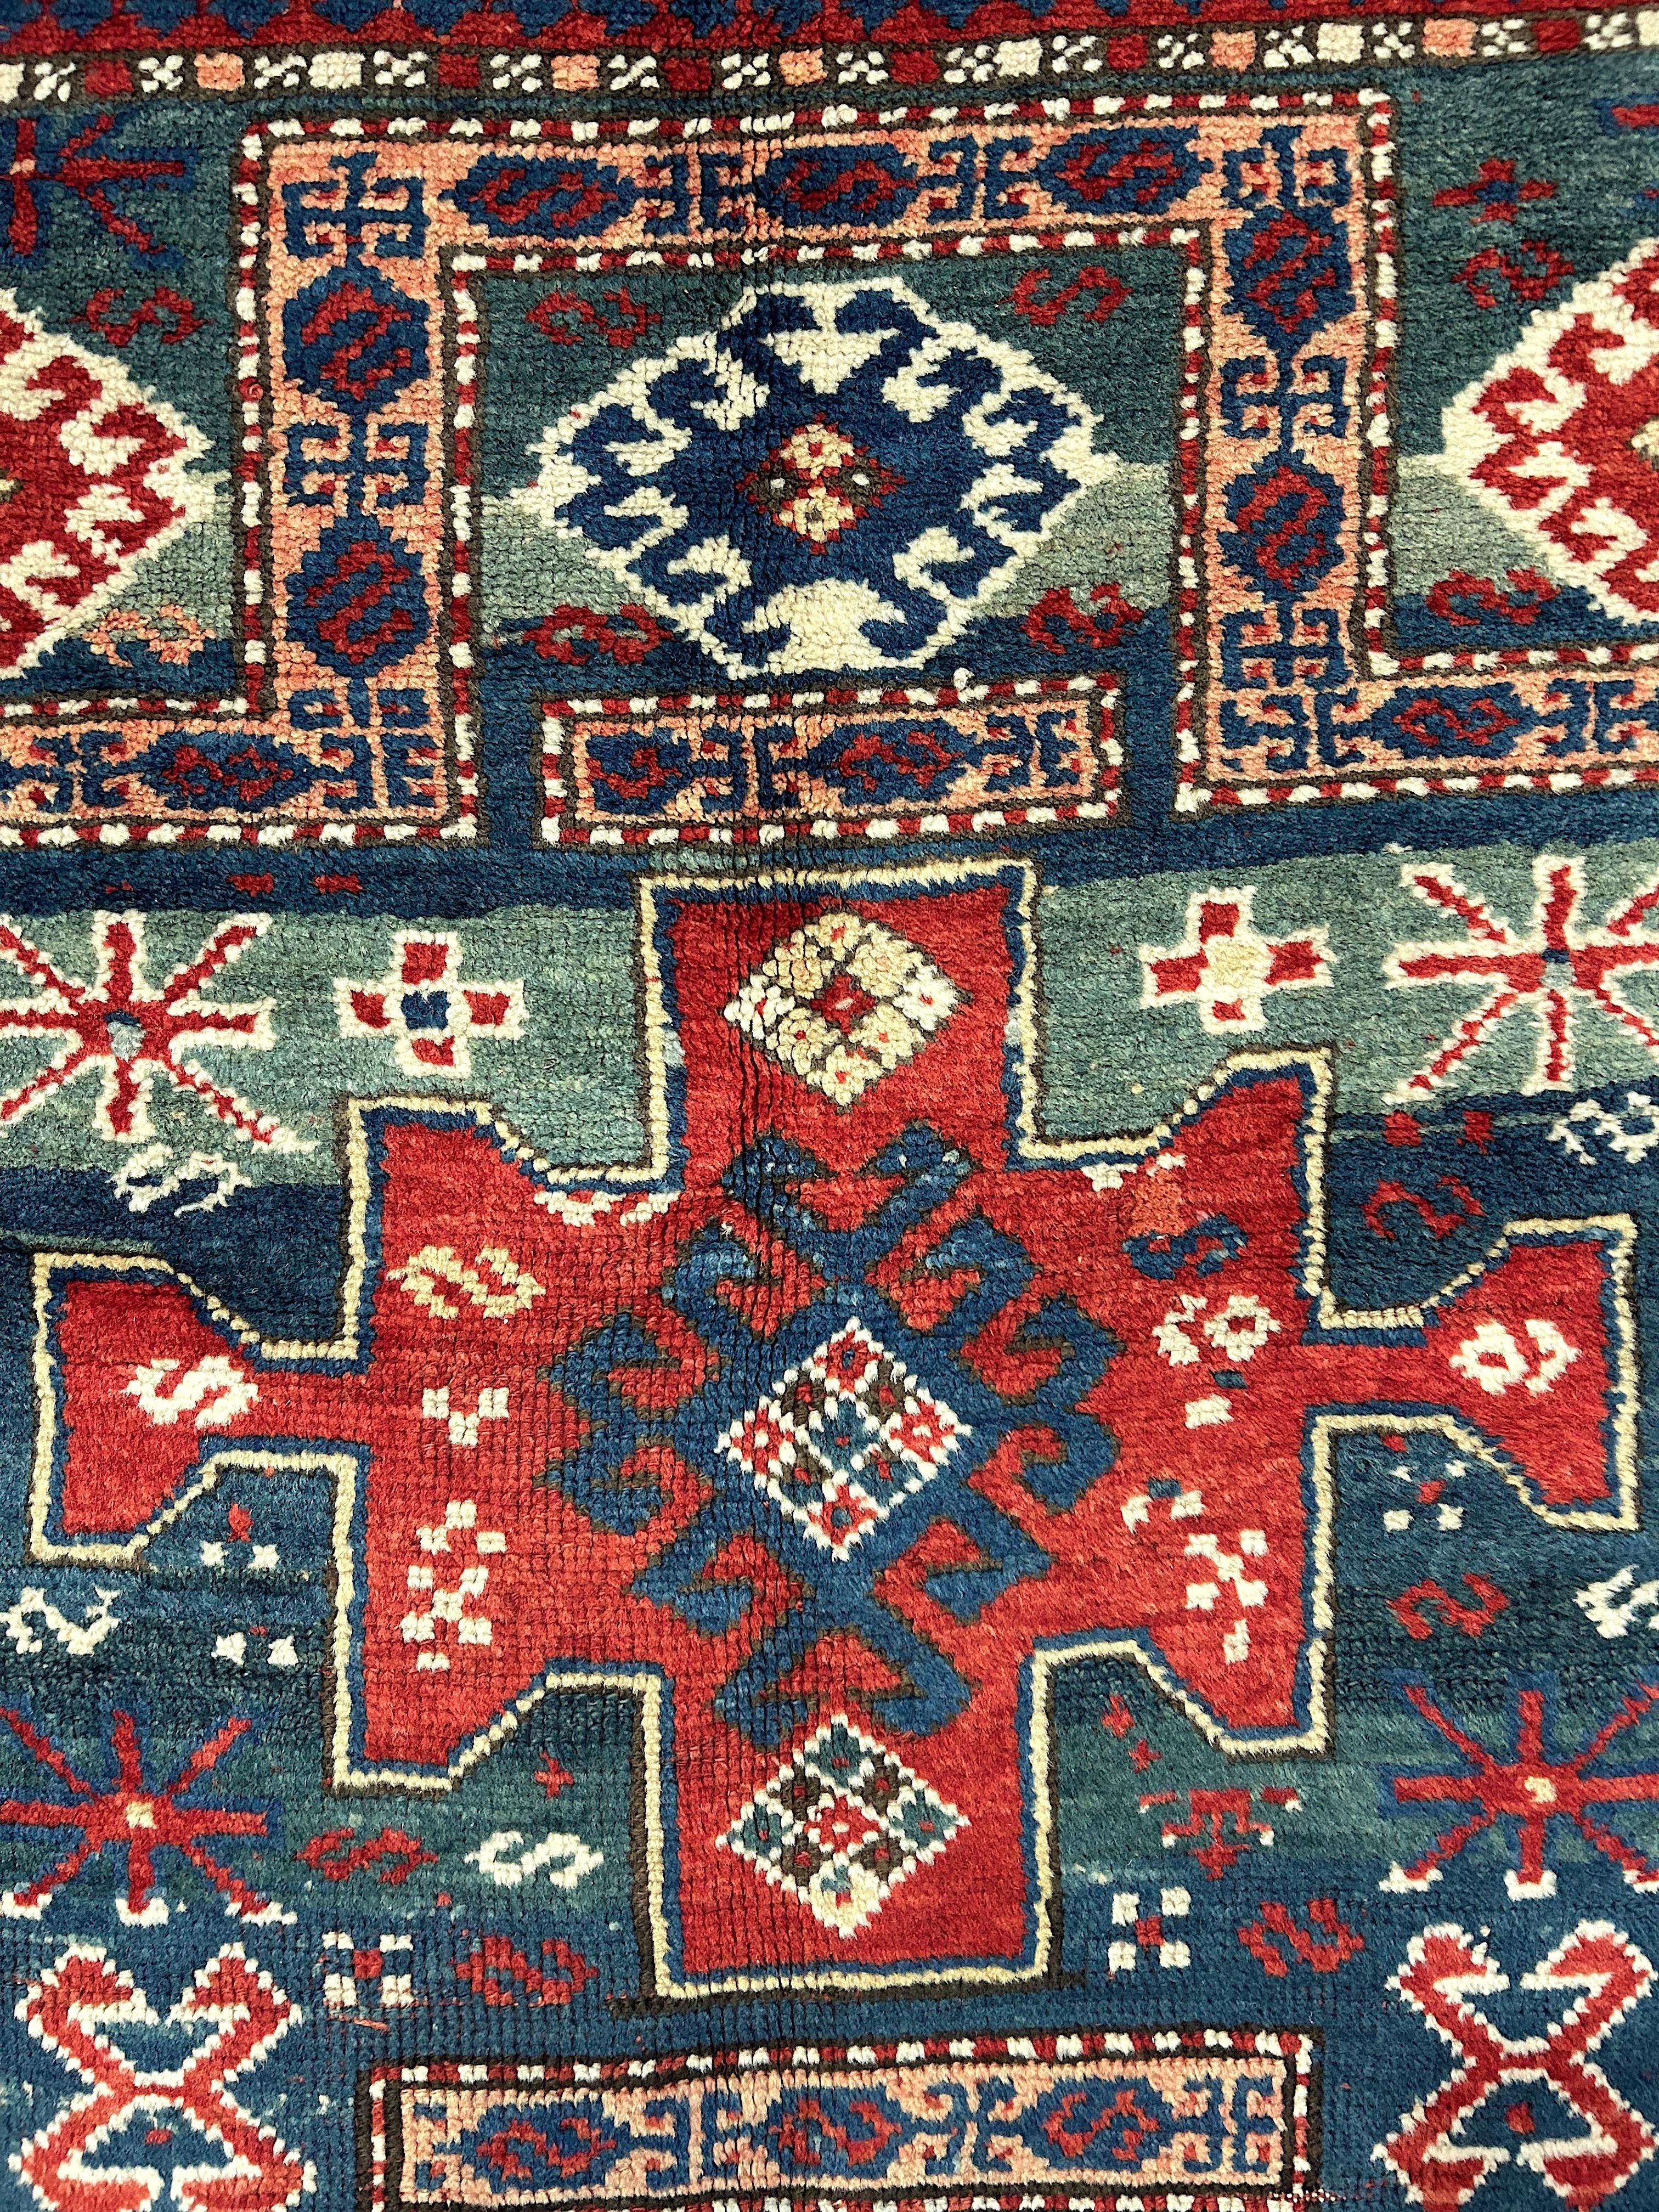 Islamic Antique Double Niche Karachov Kazak Caucasian Rug